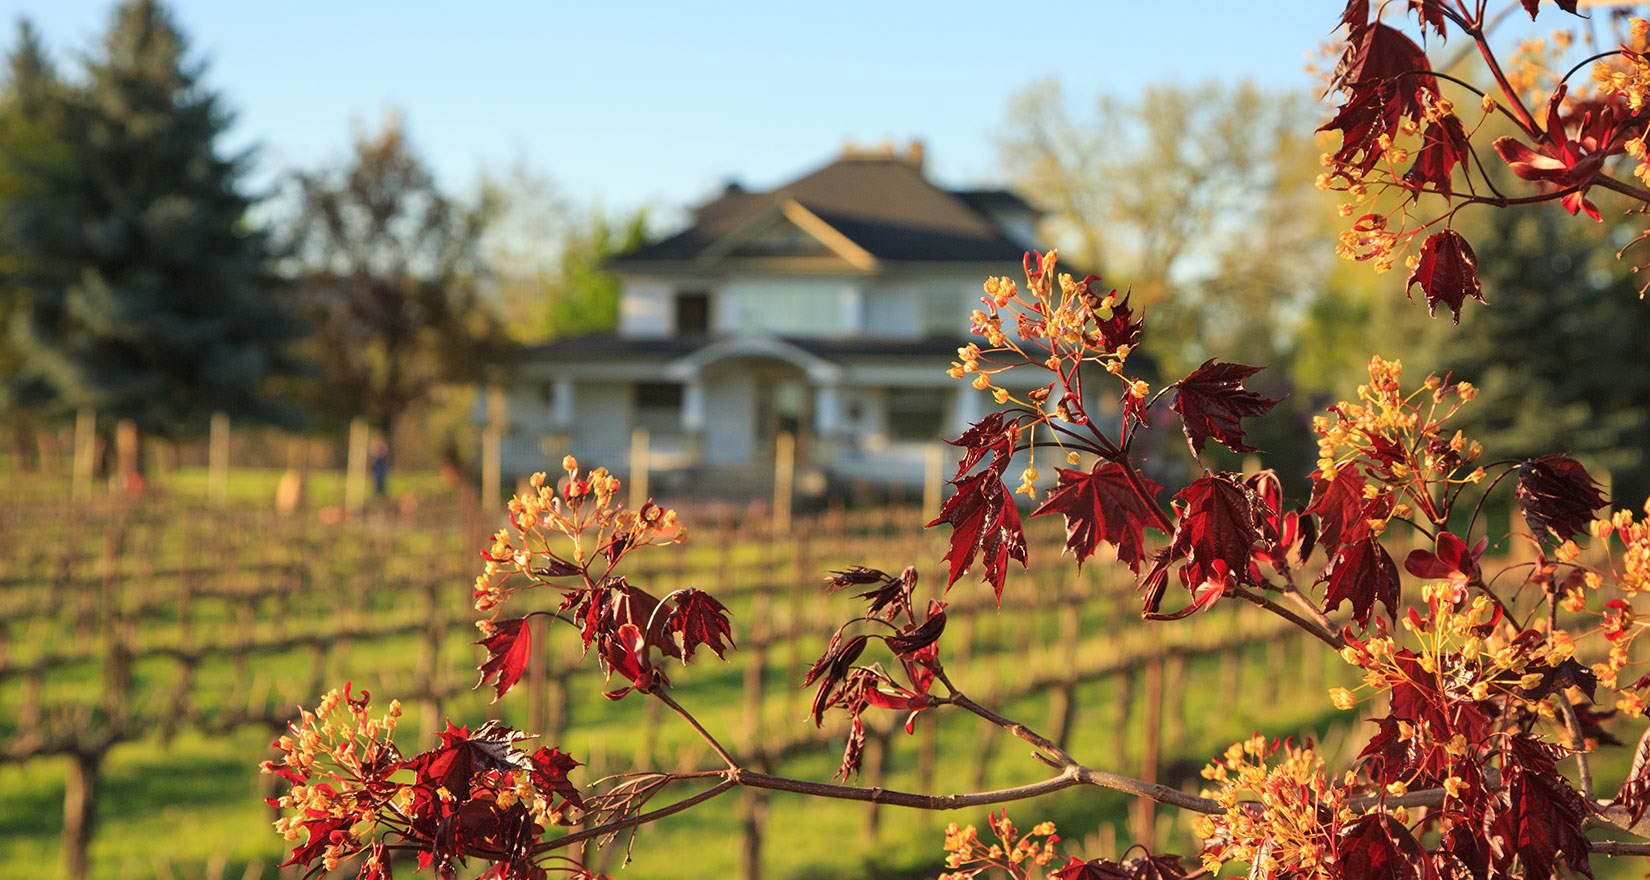 Grape vines in autumn